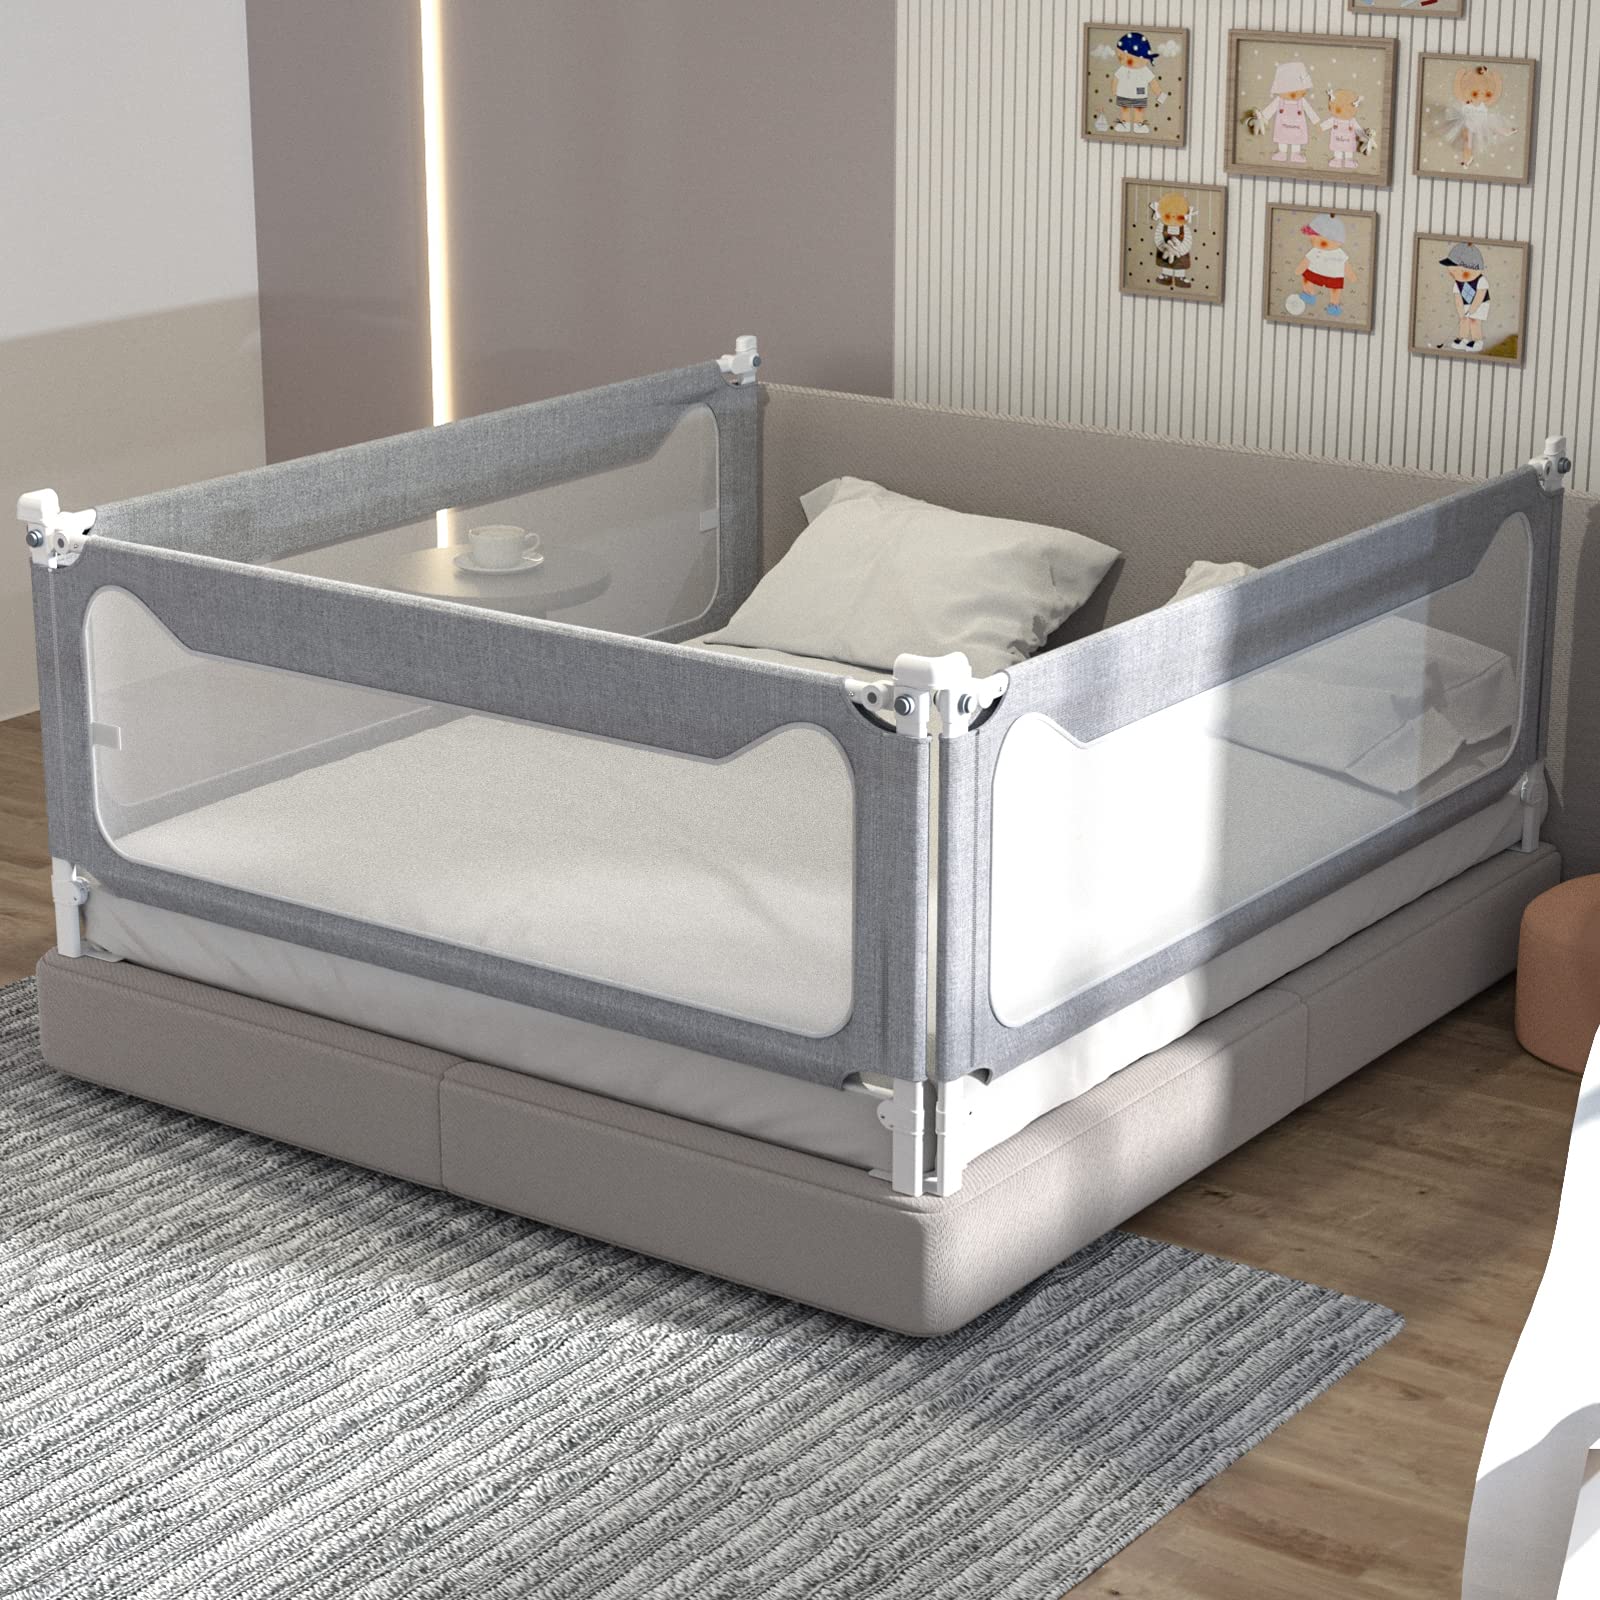 1 Unidad de Riel para cama para niños pequeños, 137cm de largo